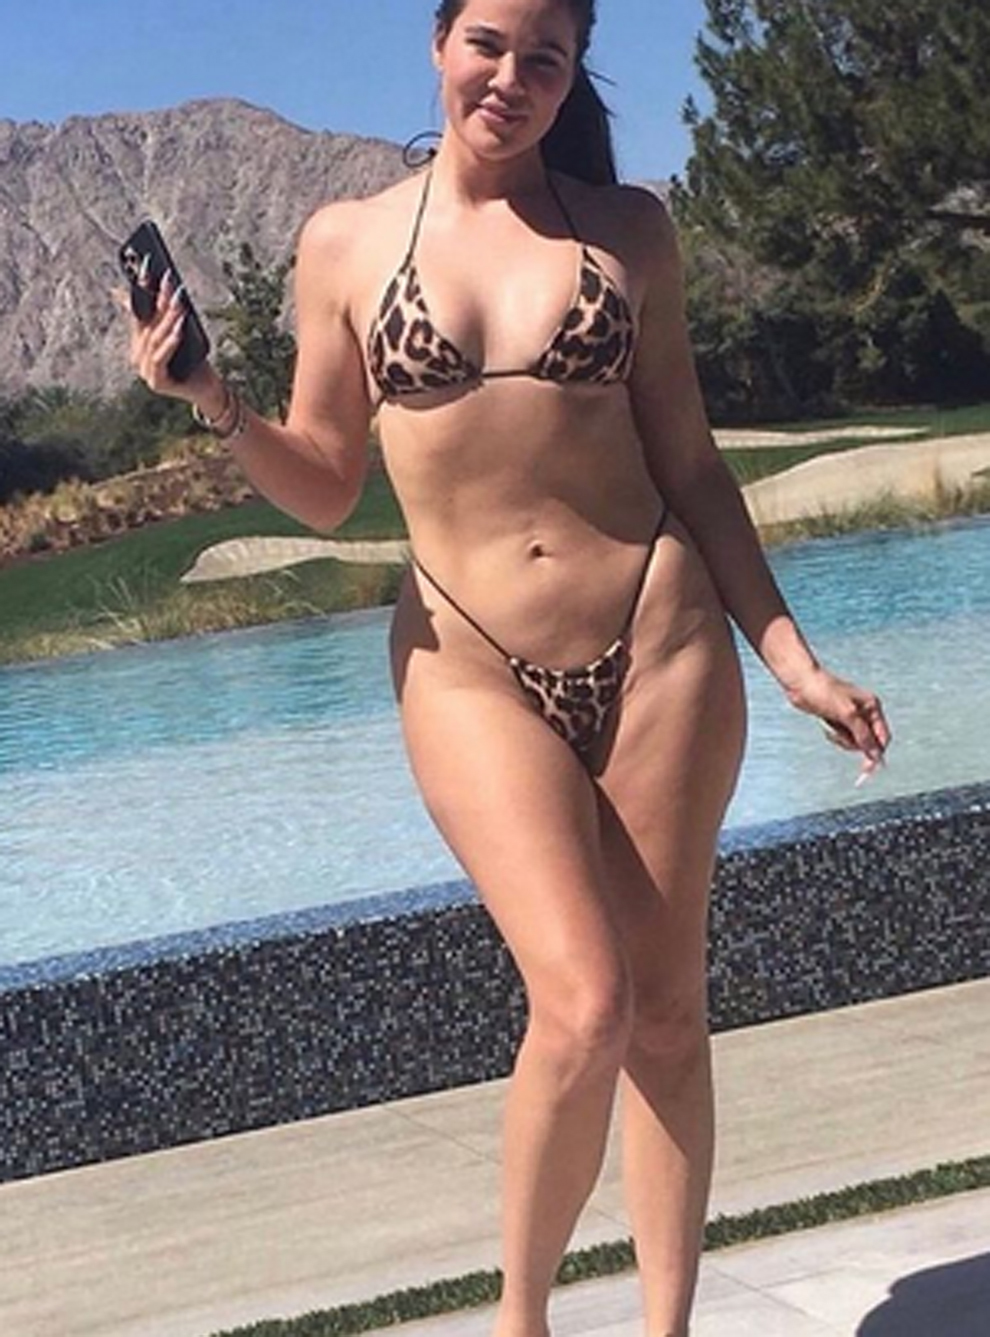 Best of Khloe kardashian naked images